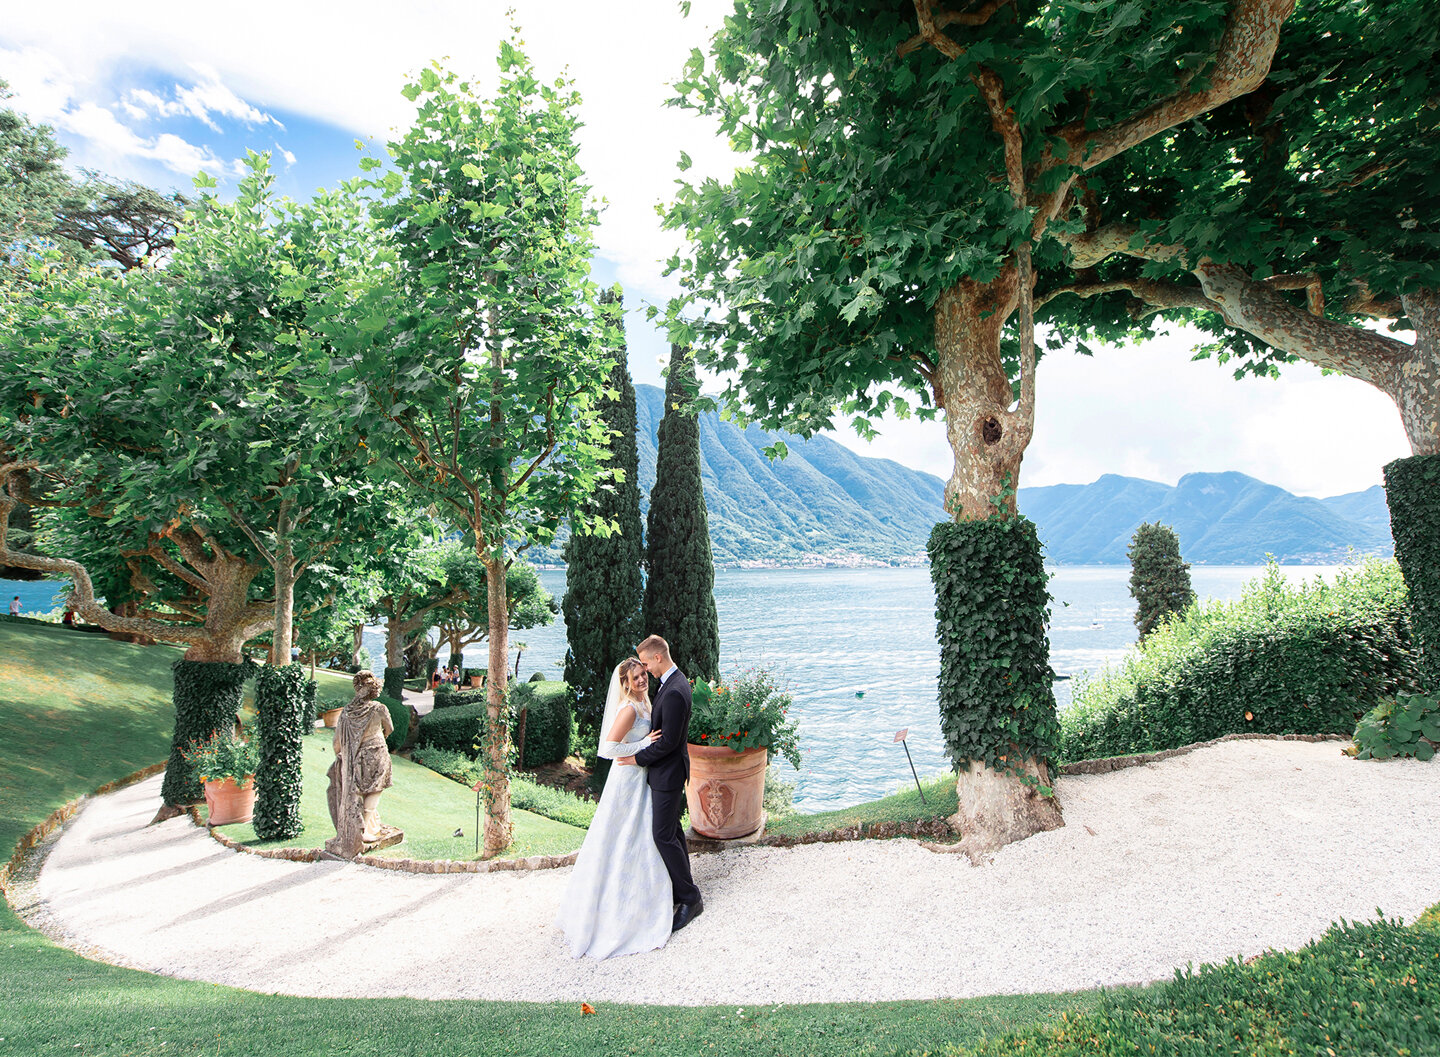 The couple in Villa del Balbianello garden